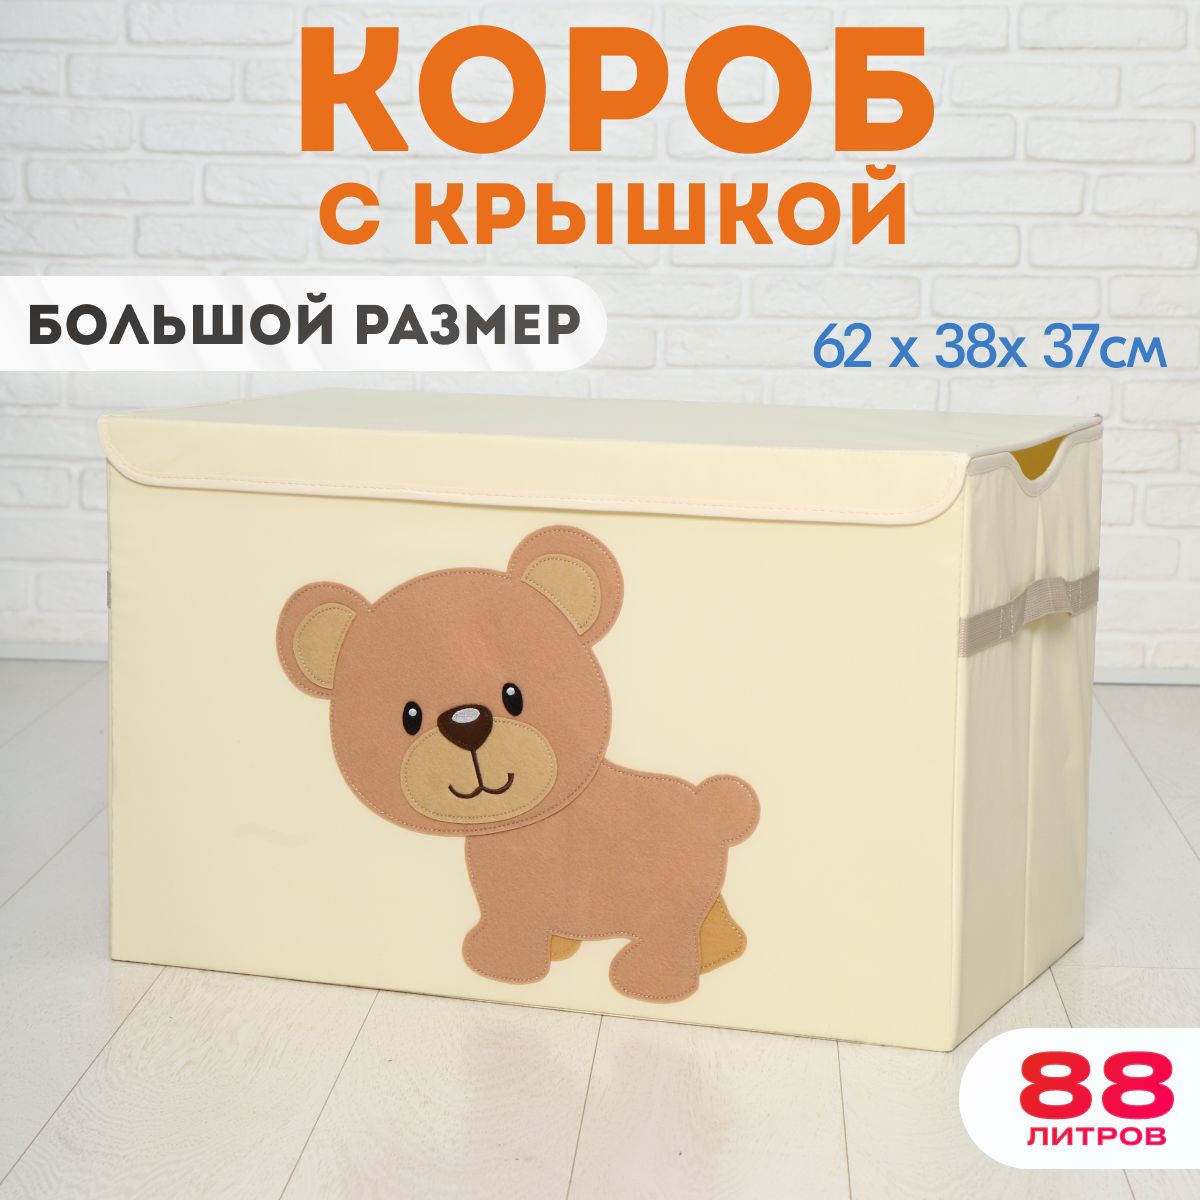 Корзина для хранения игрушек, HappySava, Медведь, 88 литров